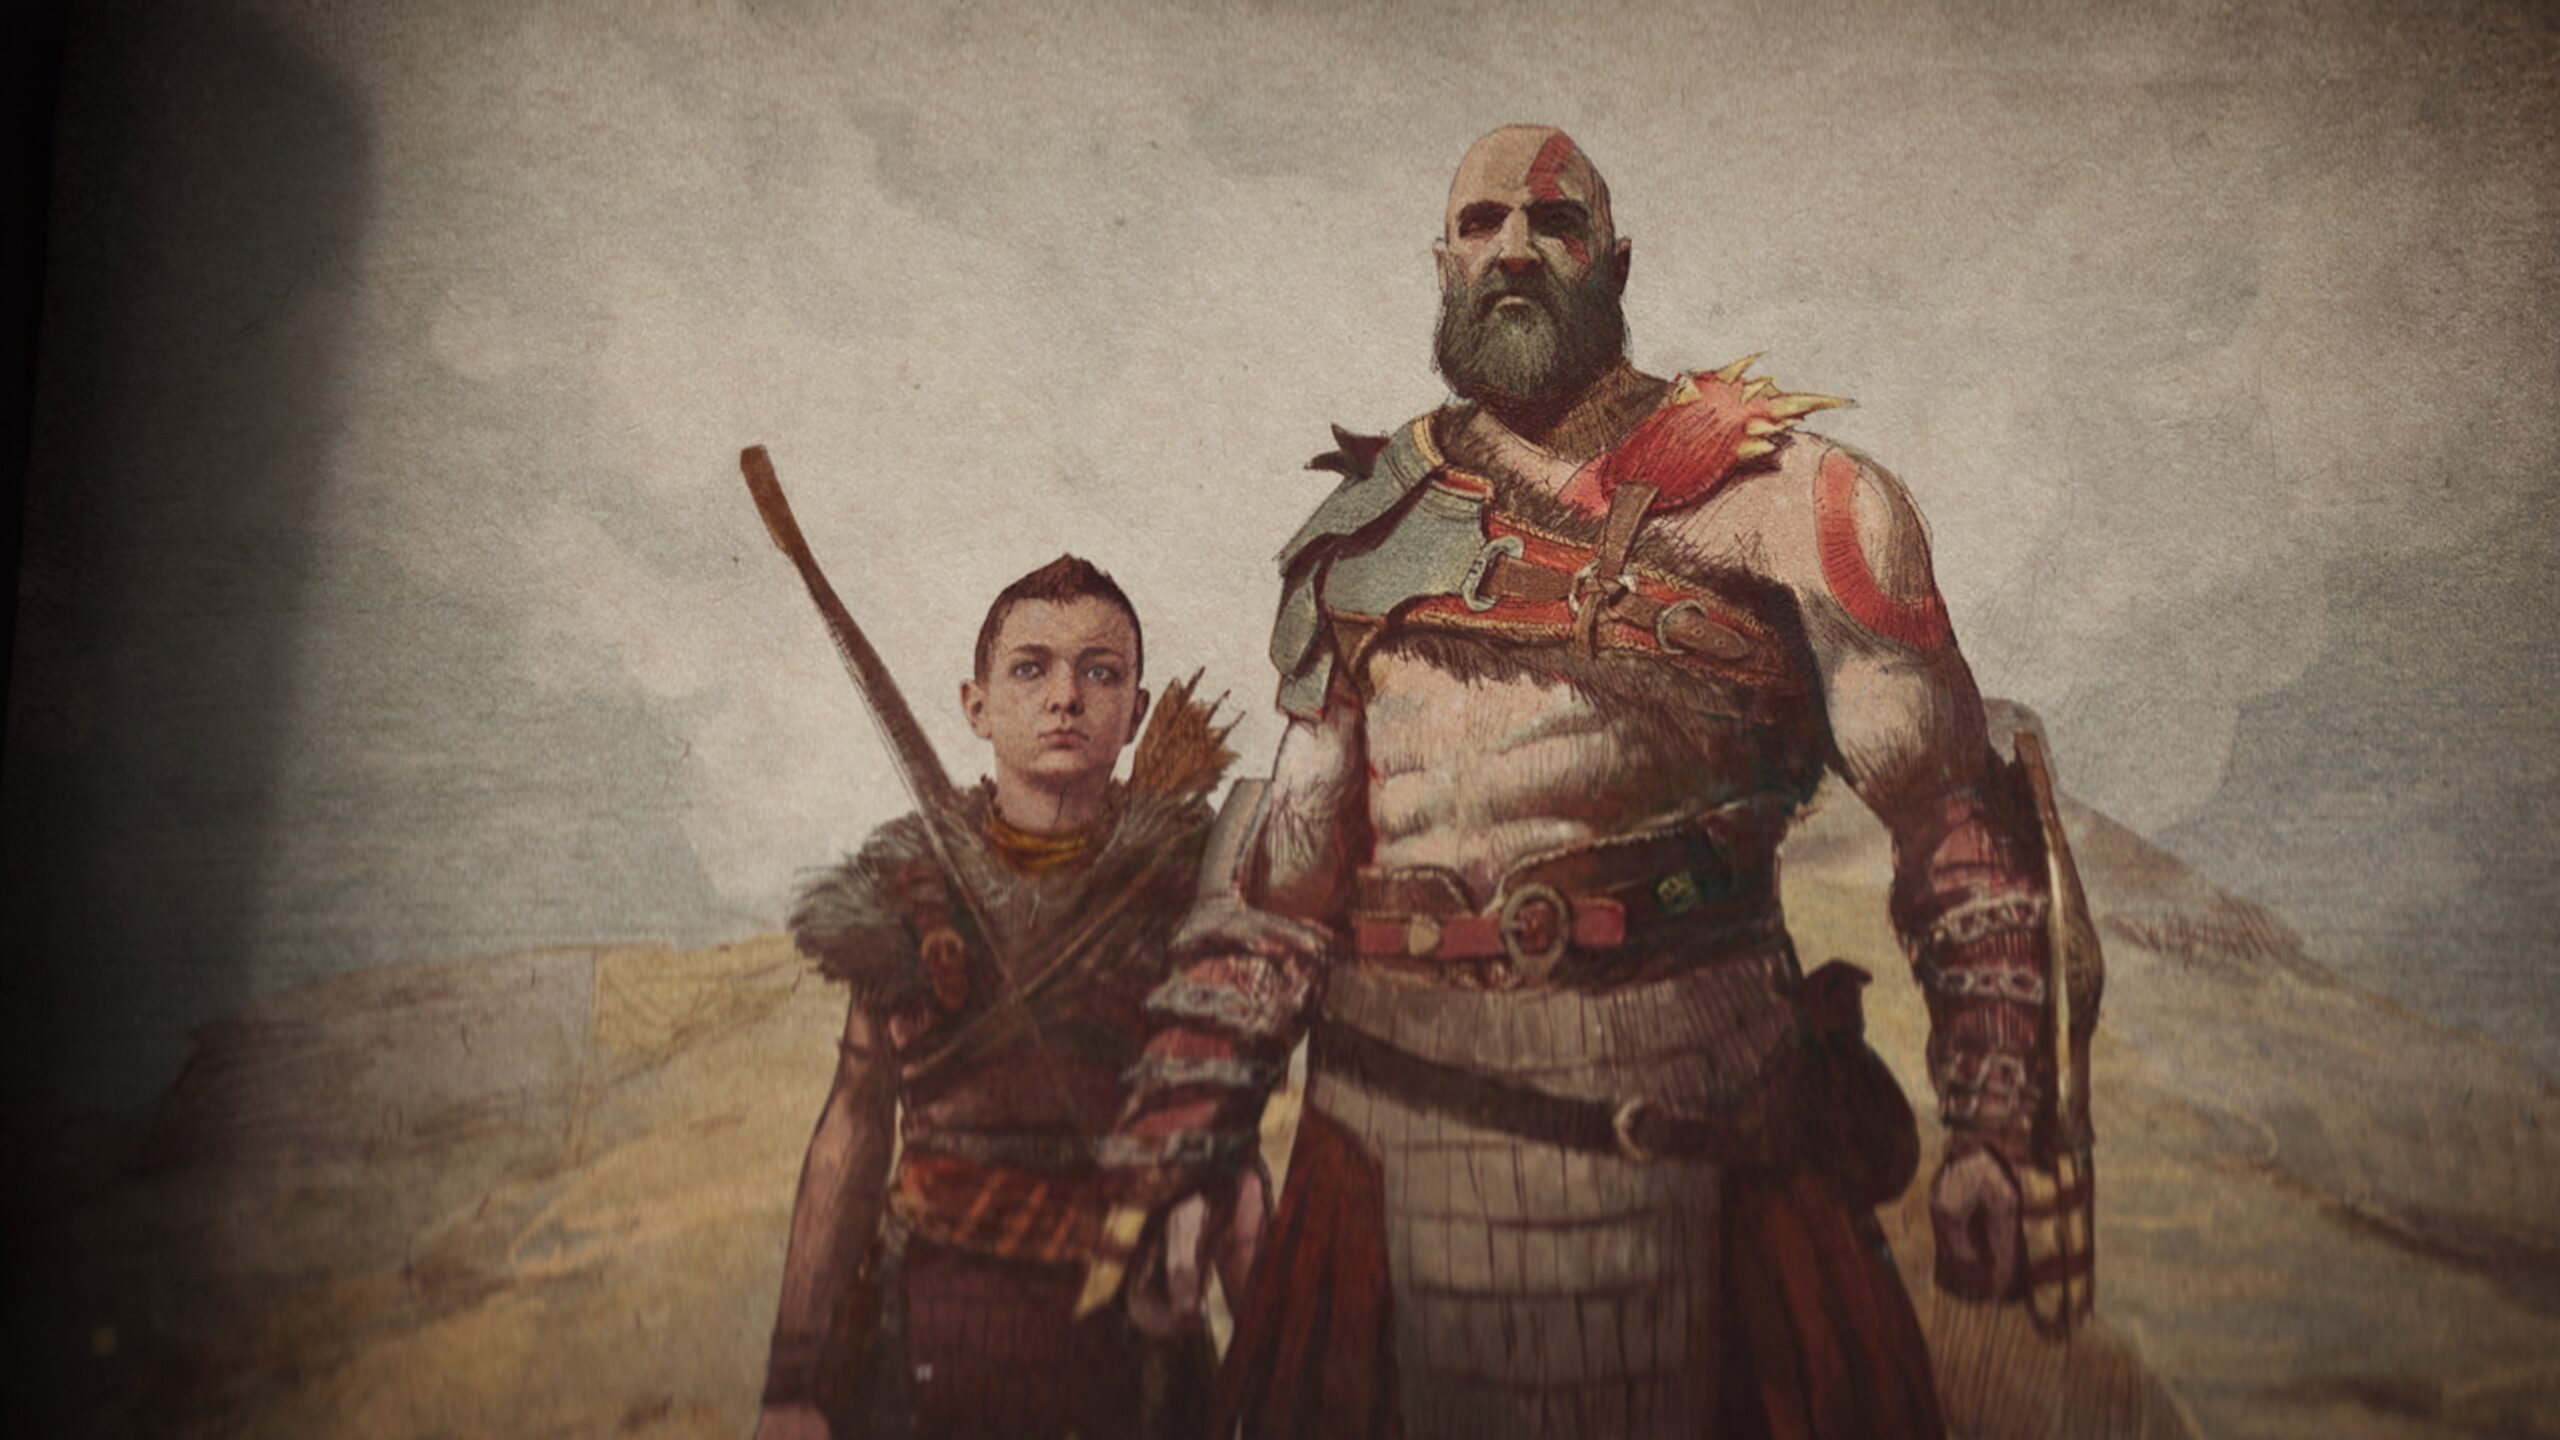 God of War Ragnarok: Tudo que sabemos sobre o jogo - Olhar Digital